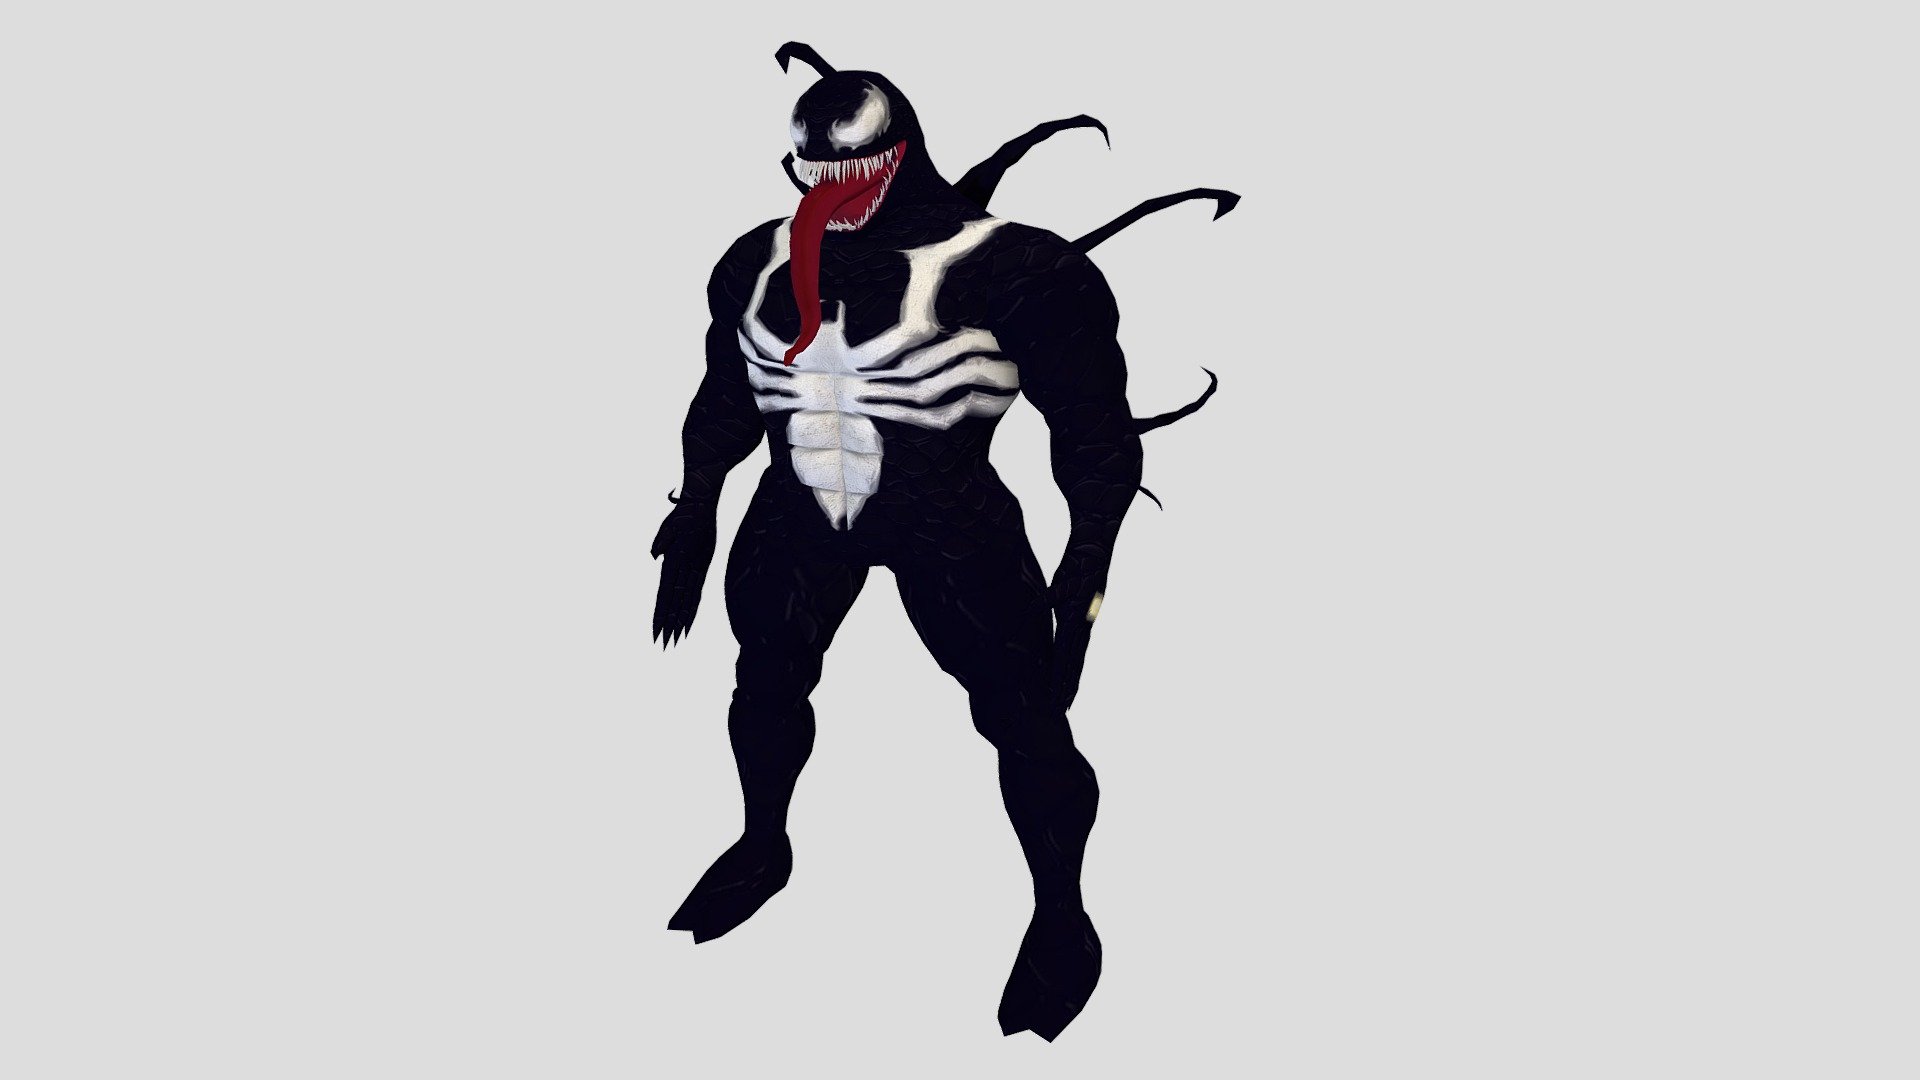 Venom download the last version for mac